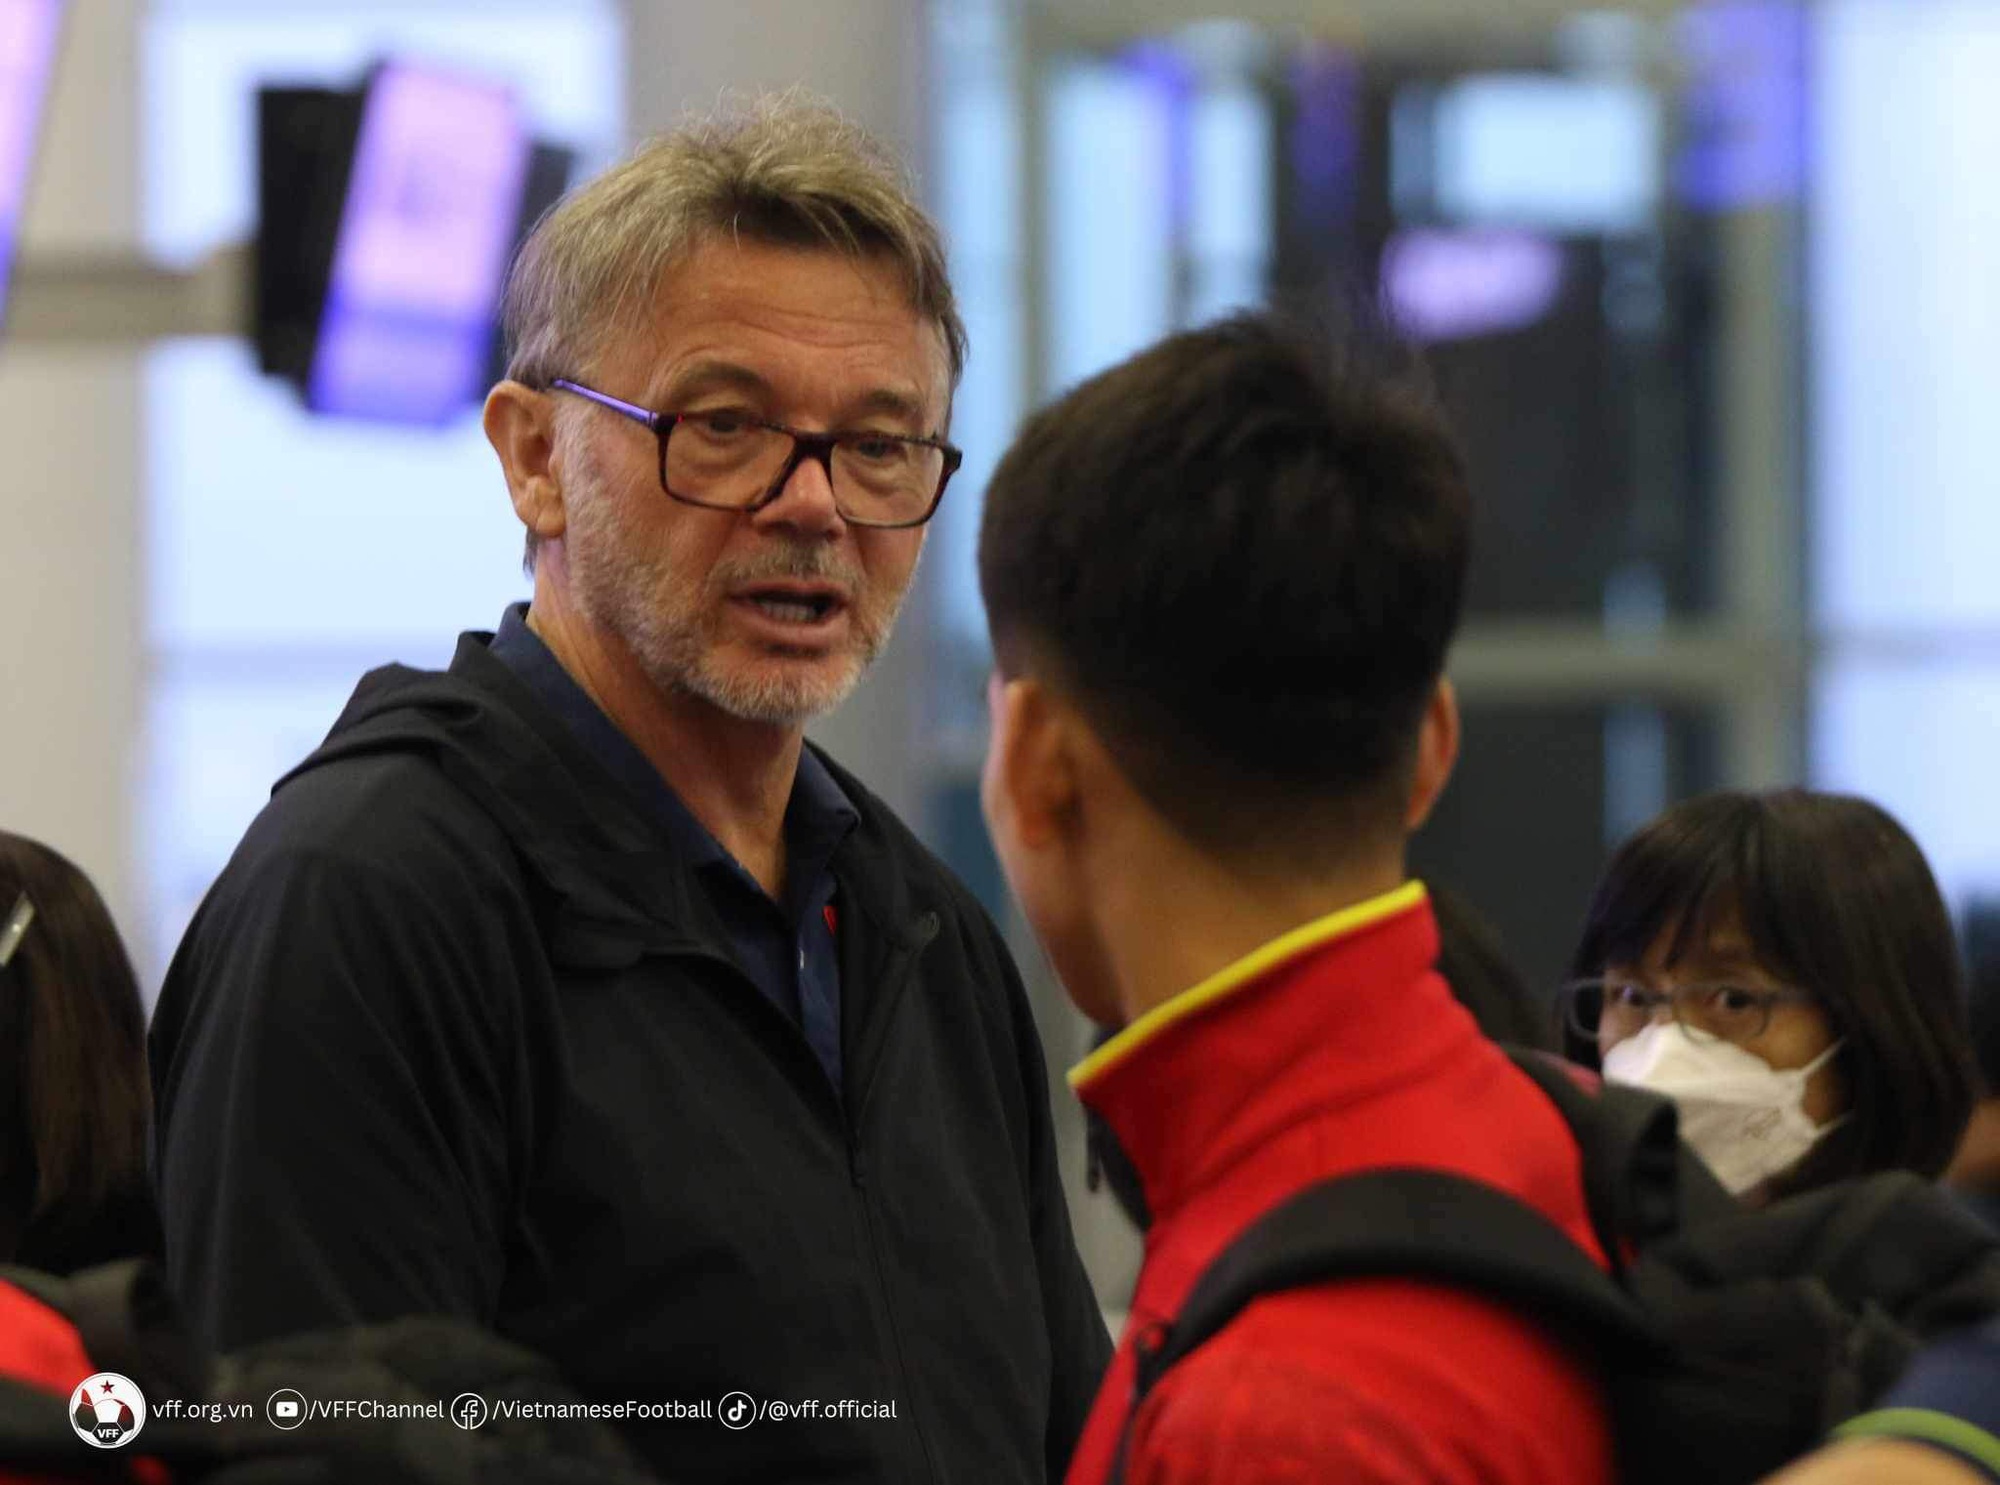 Đội tuyển Việt Nam có mặt ở sân bay lên đường sang Philippines  - Ảnh 6.